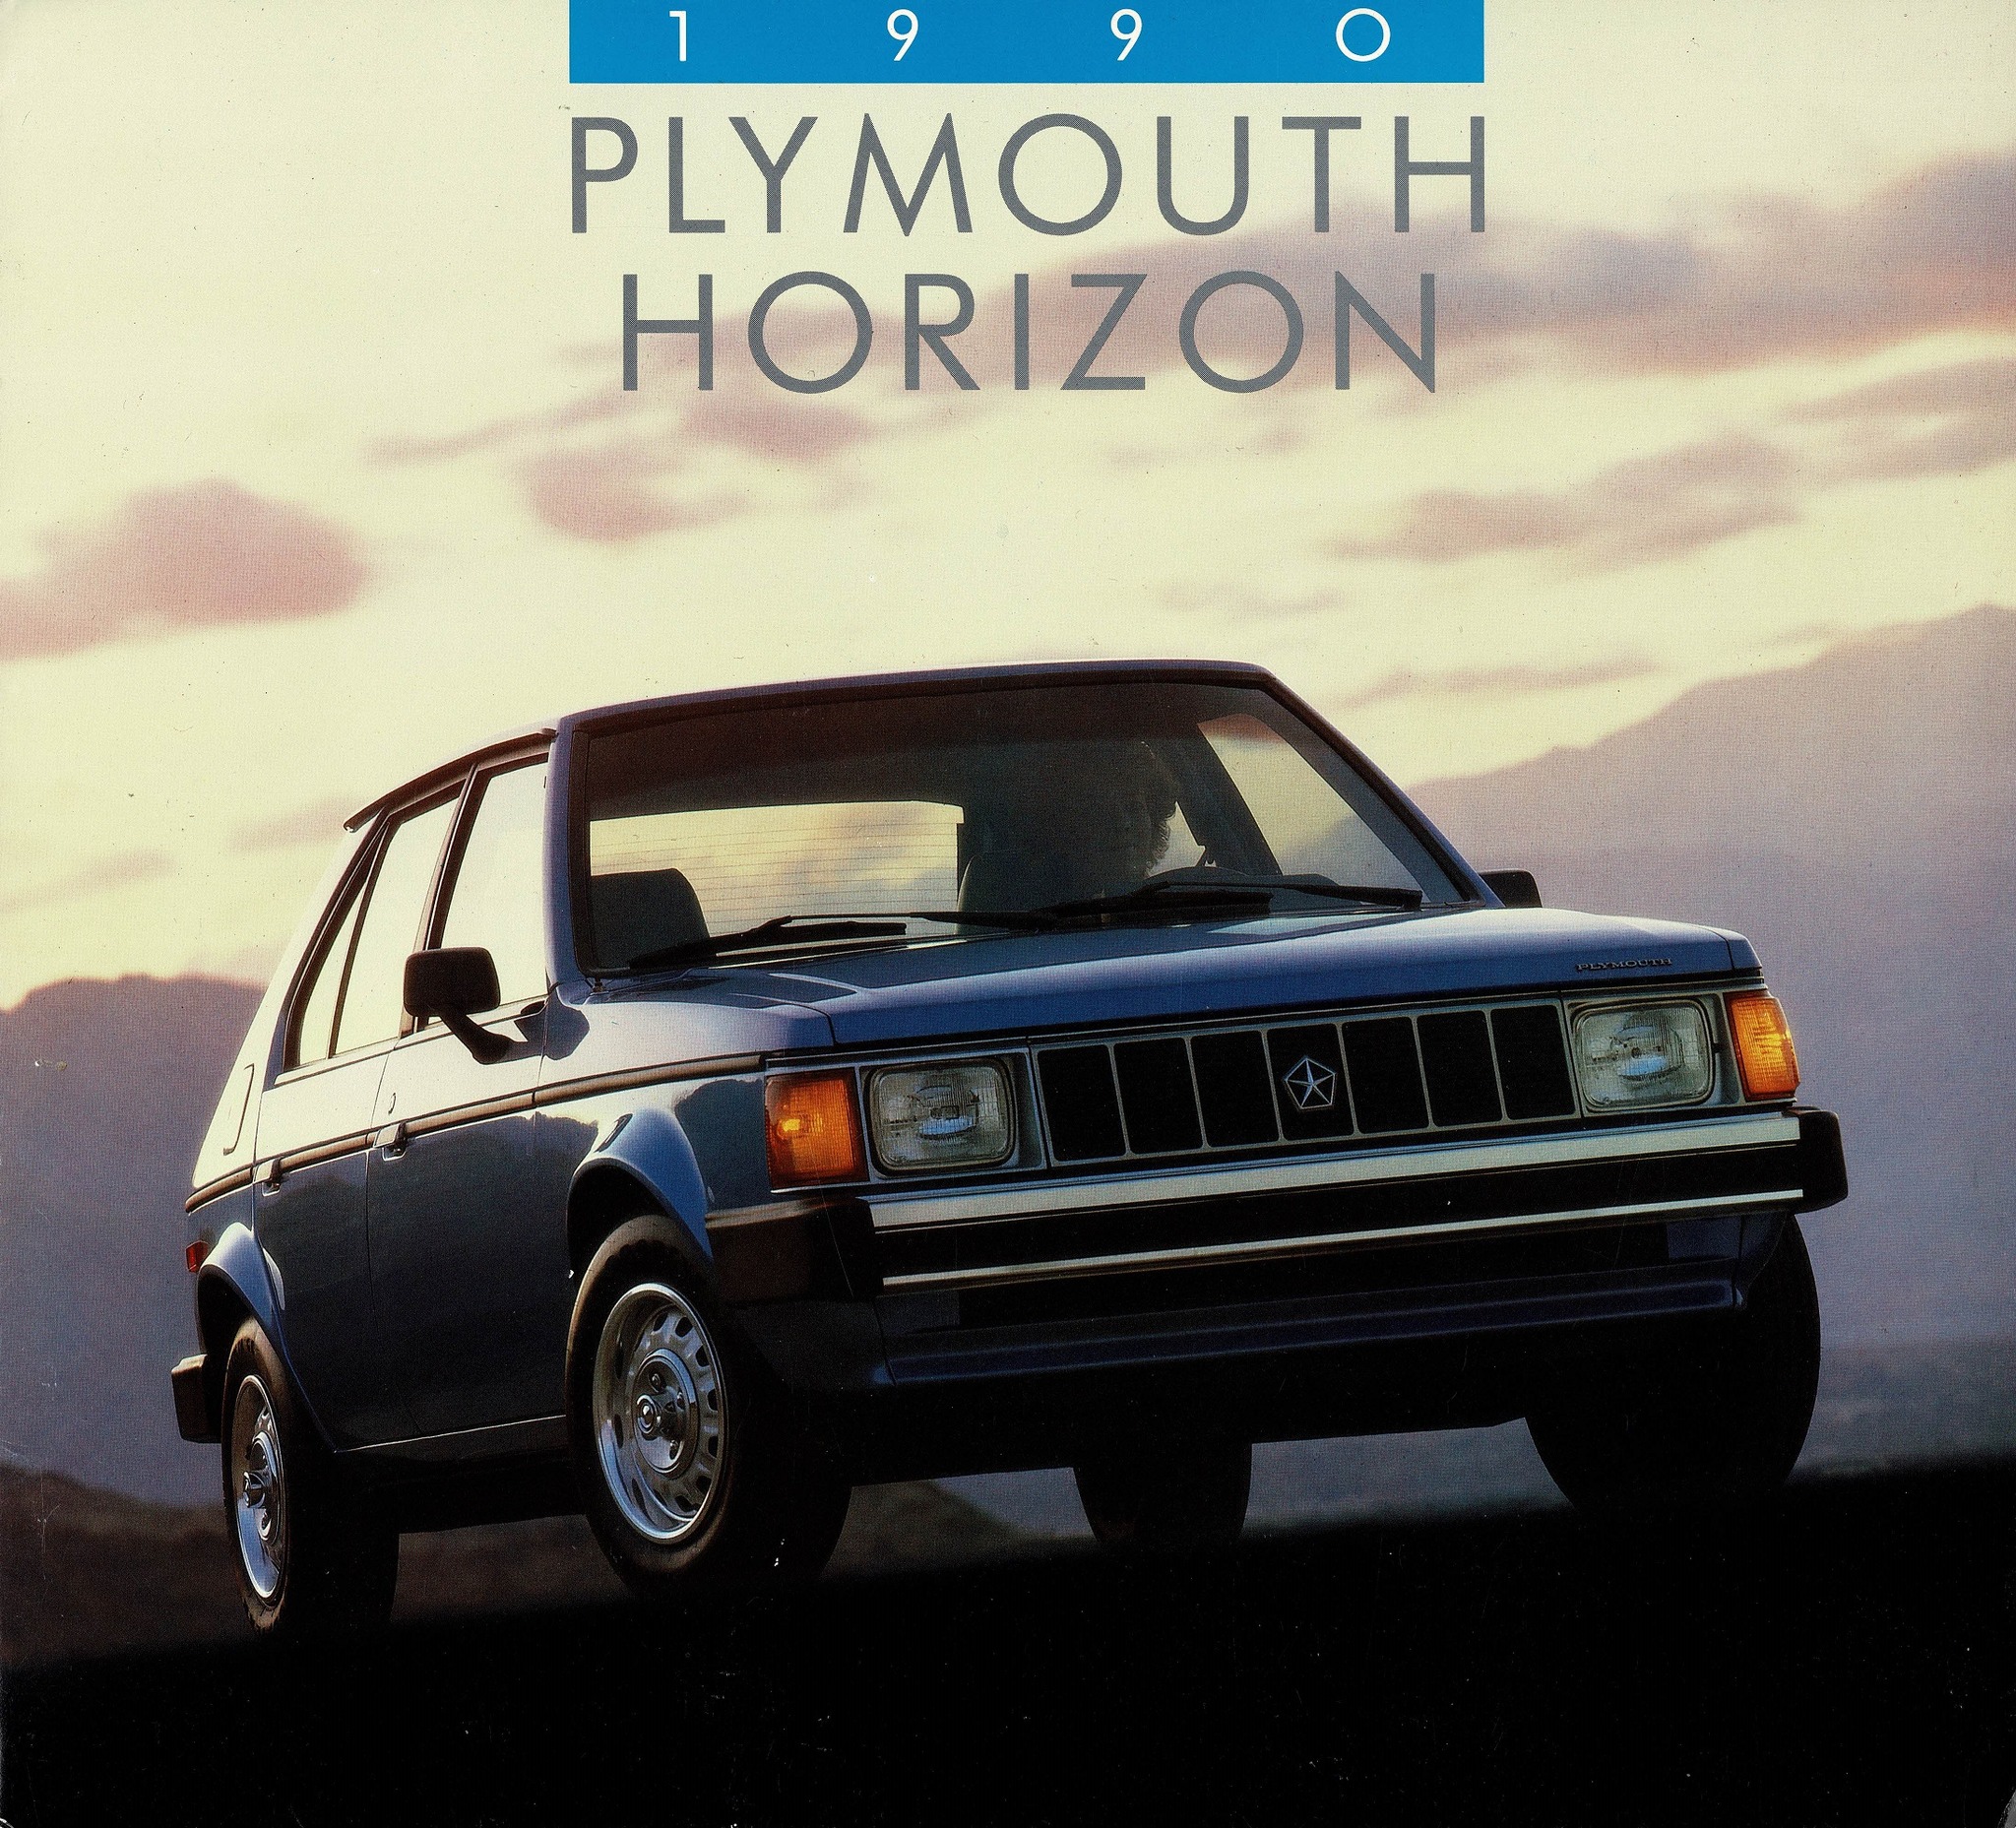 1989 Plymouth Horizon.pdf-2023-11-22 19.34.32_Page_1